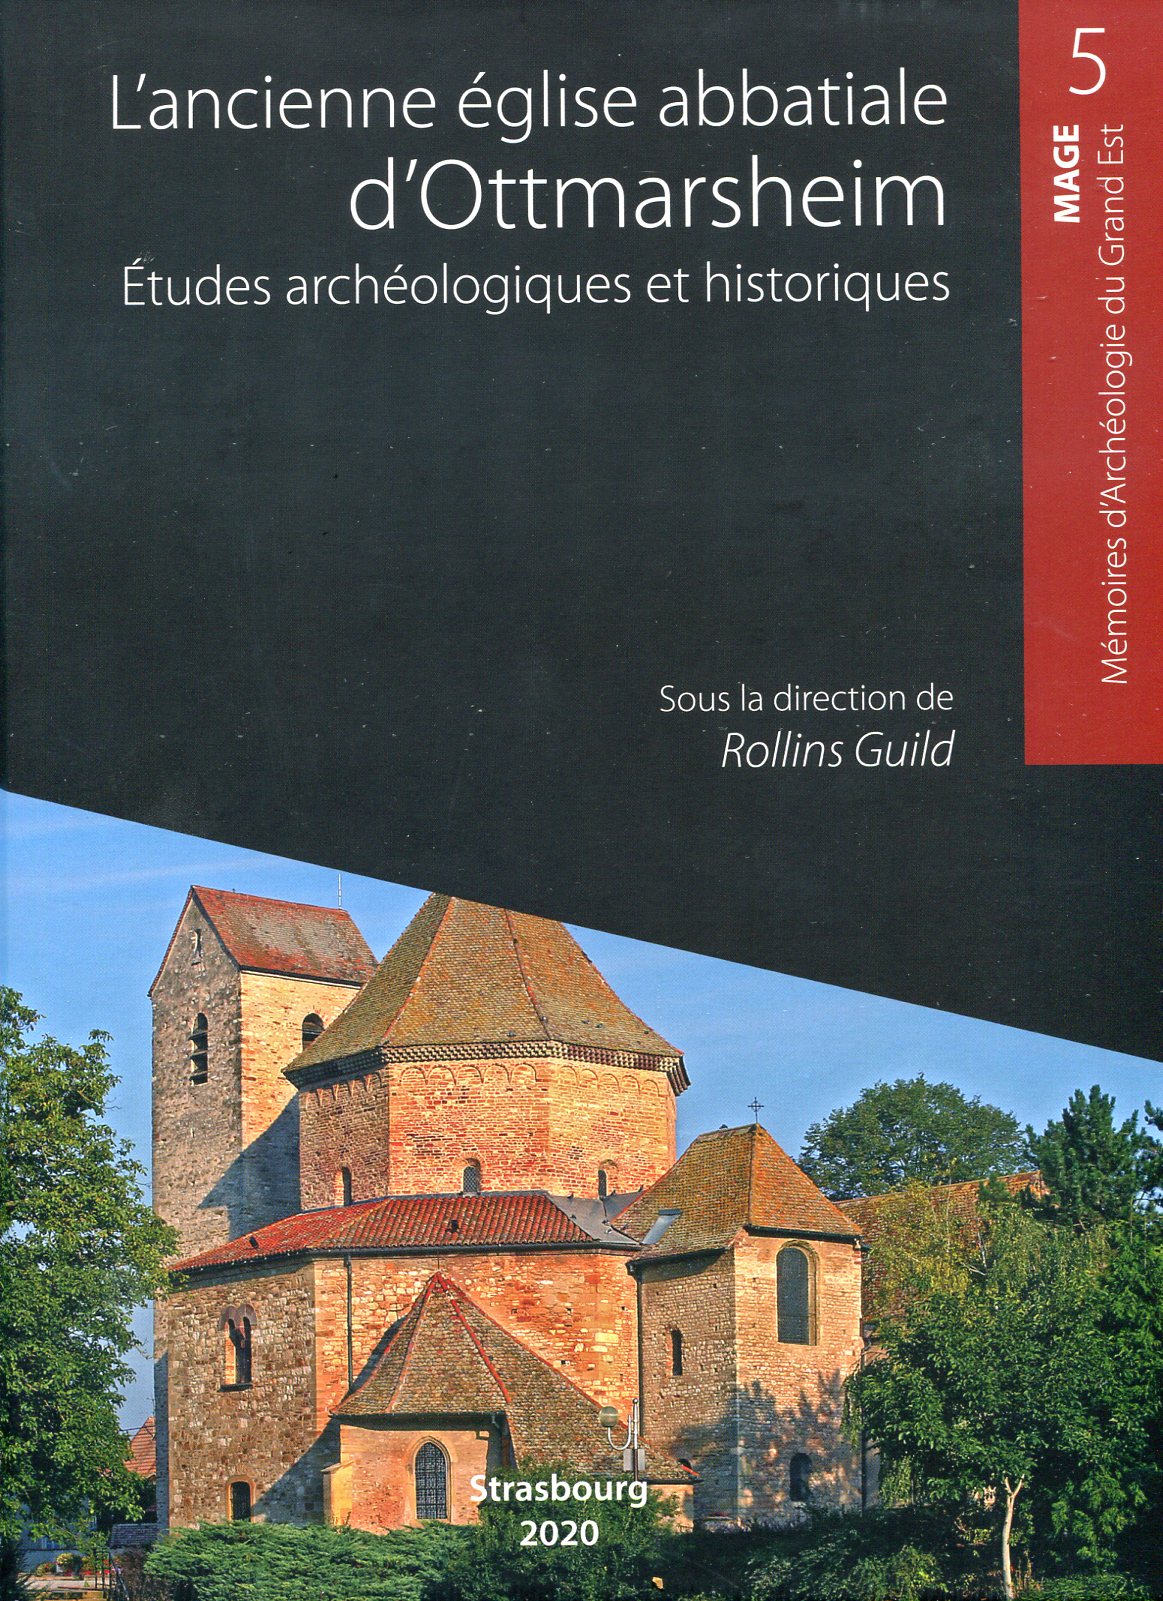 L'ancienne église abbatiale d'Ottmarsheim. Etudes archéologiques et historiques, (MAGE 5), 2020.